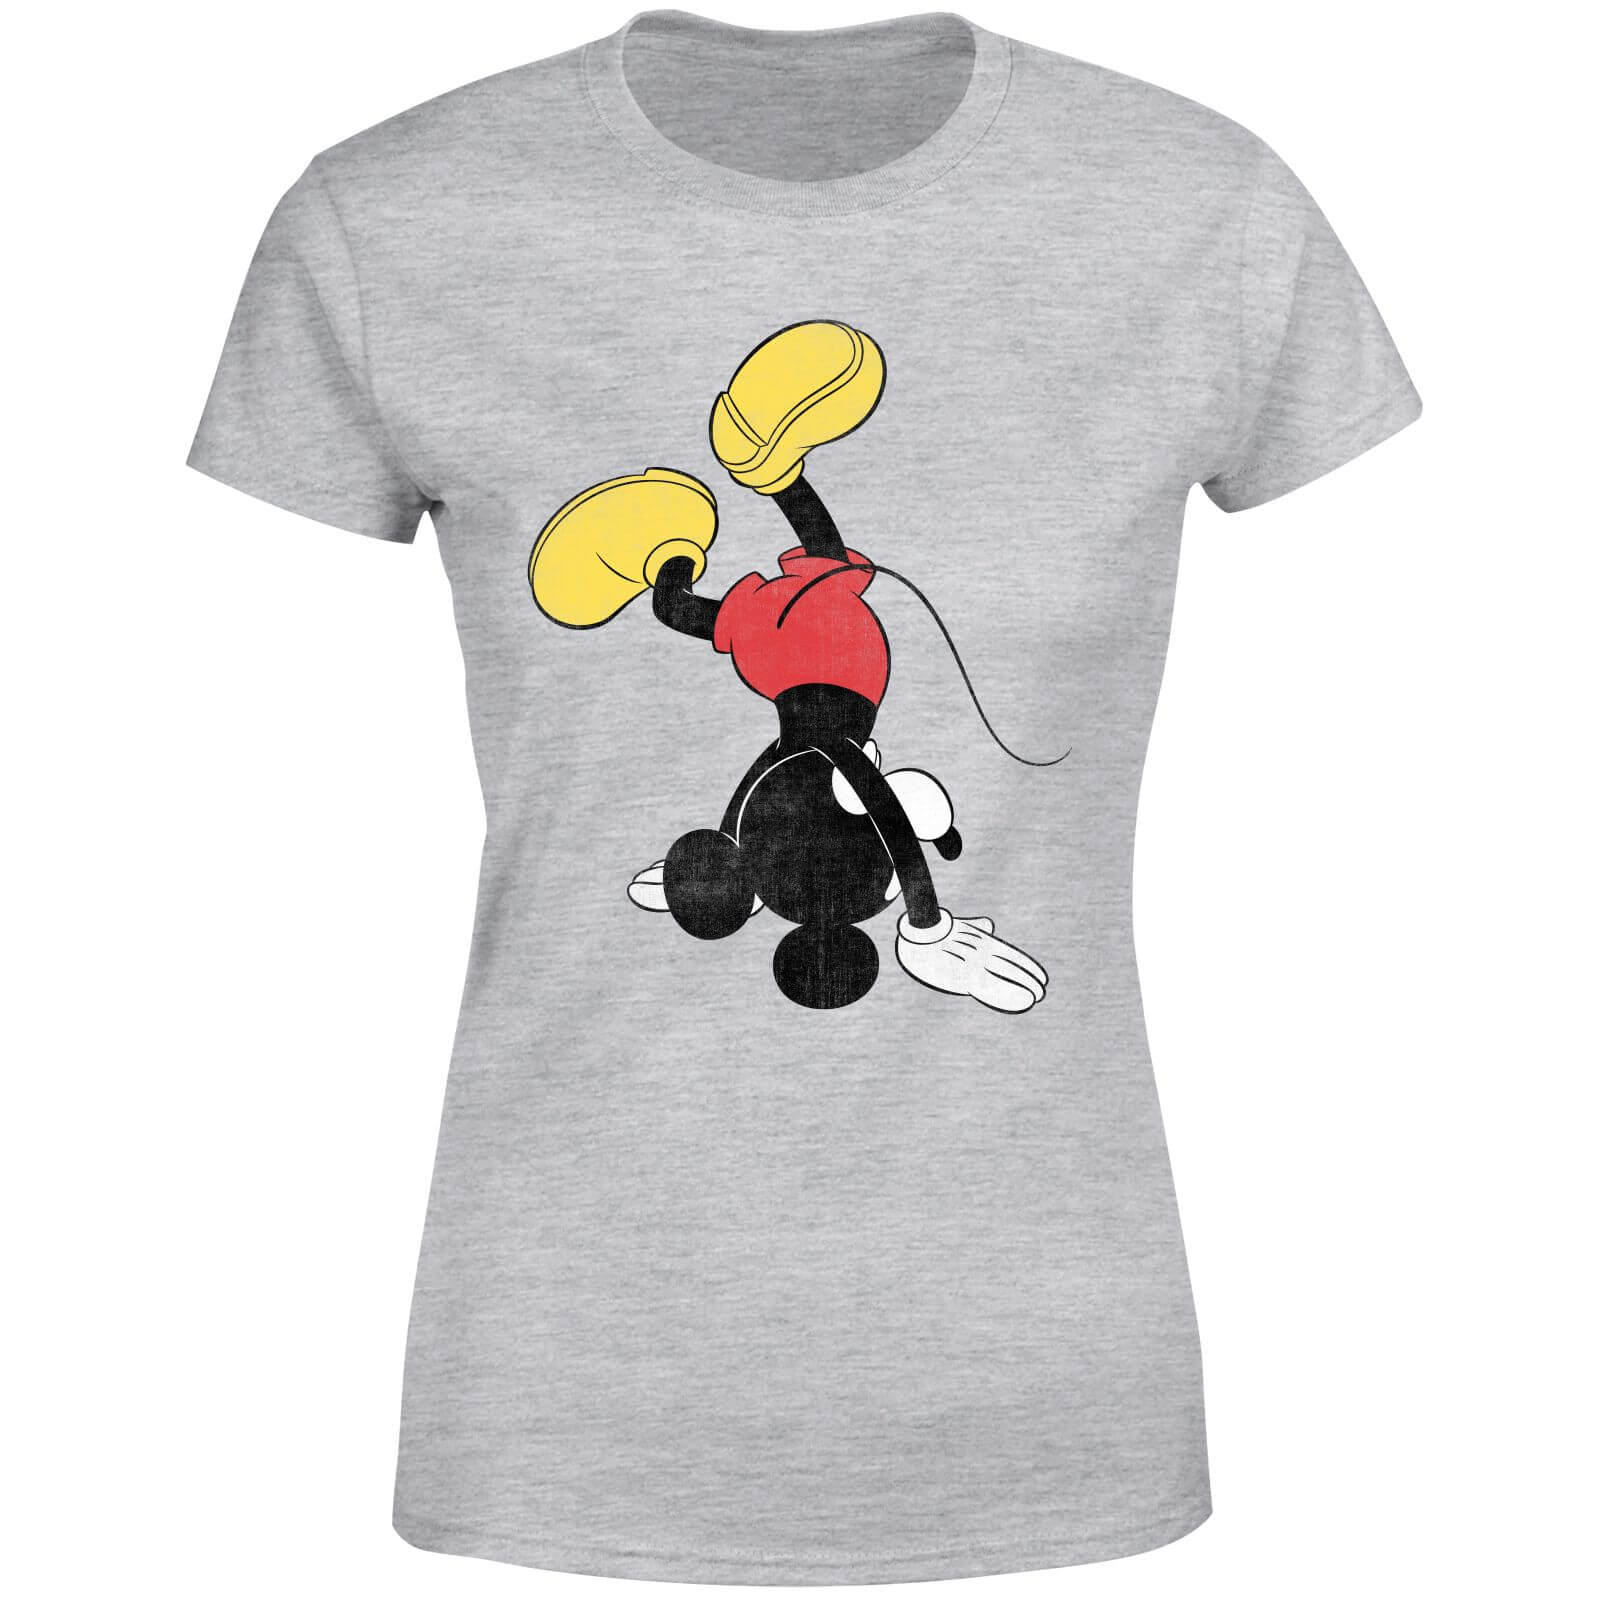 T-Shirt Femme Mickey Mouse Poirier (Disney) - Gris - XS - Gris